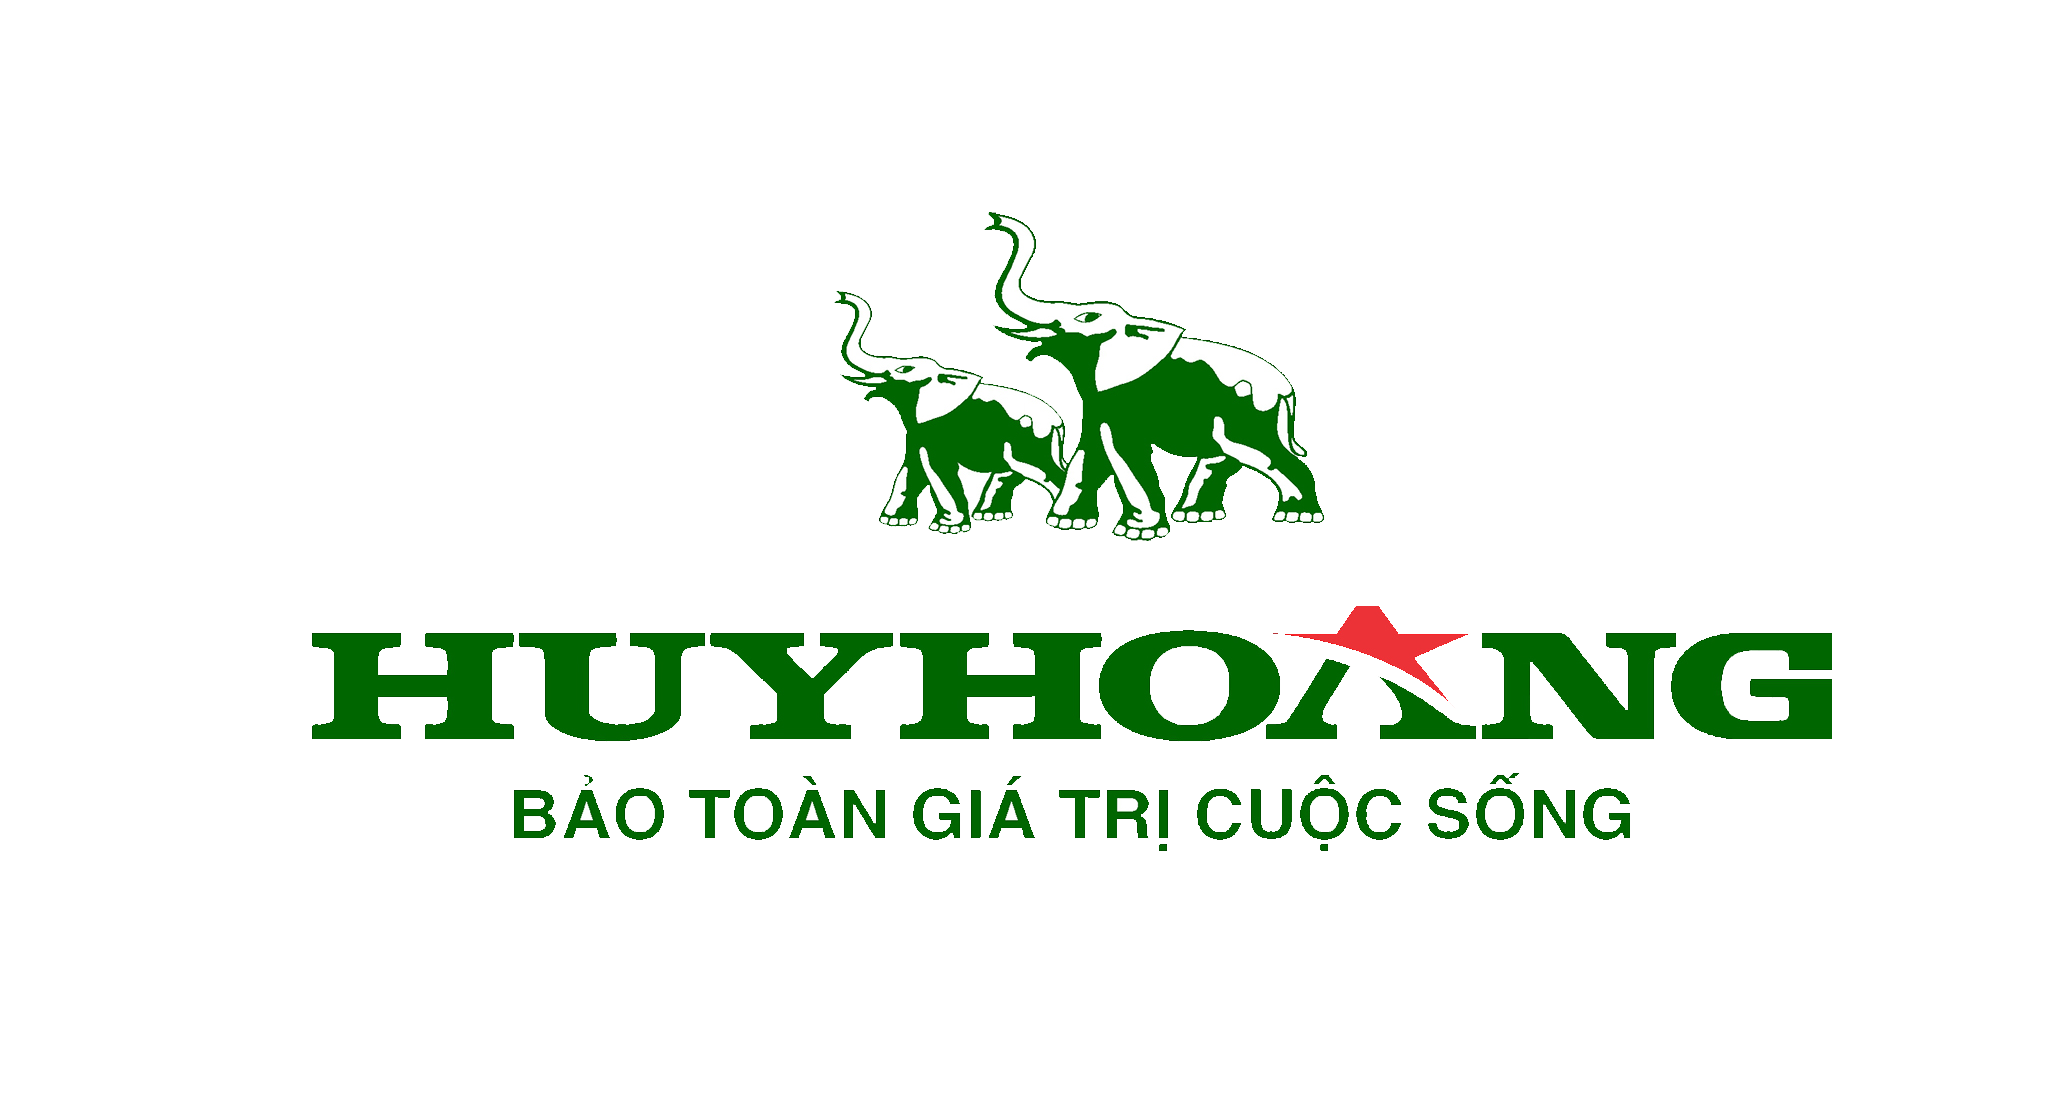 Khóa Huy Hoàng